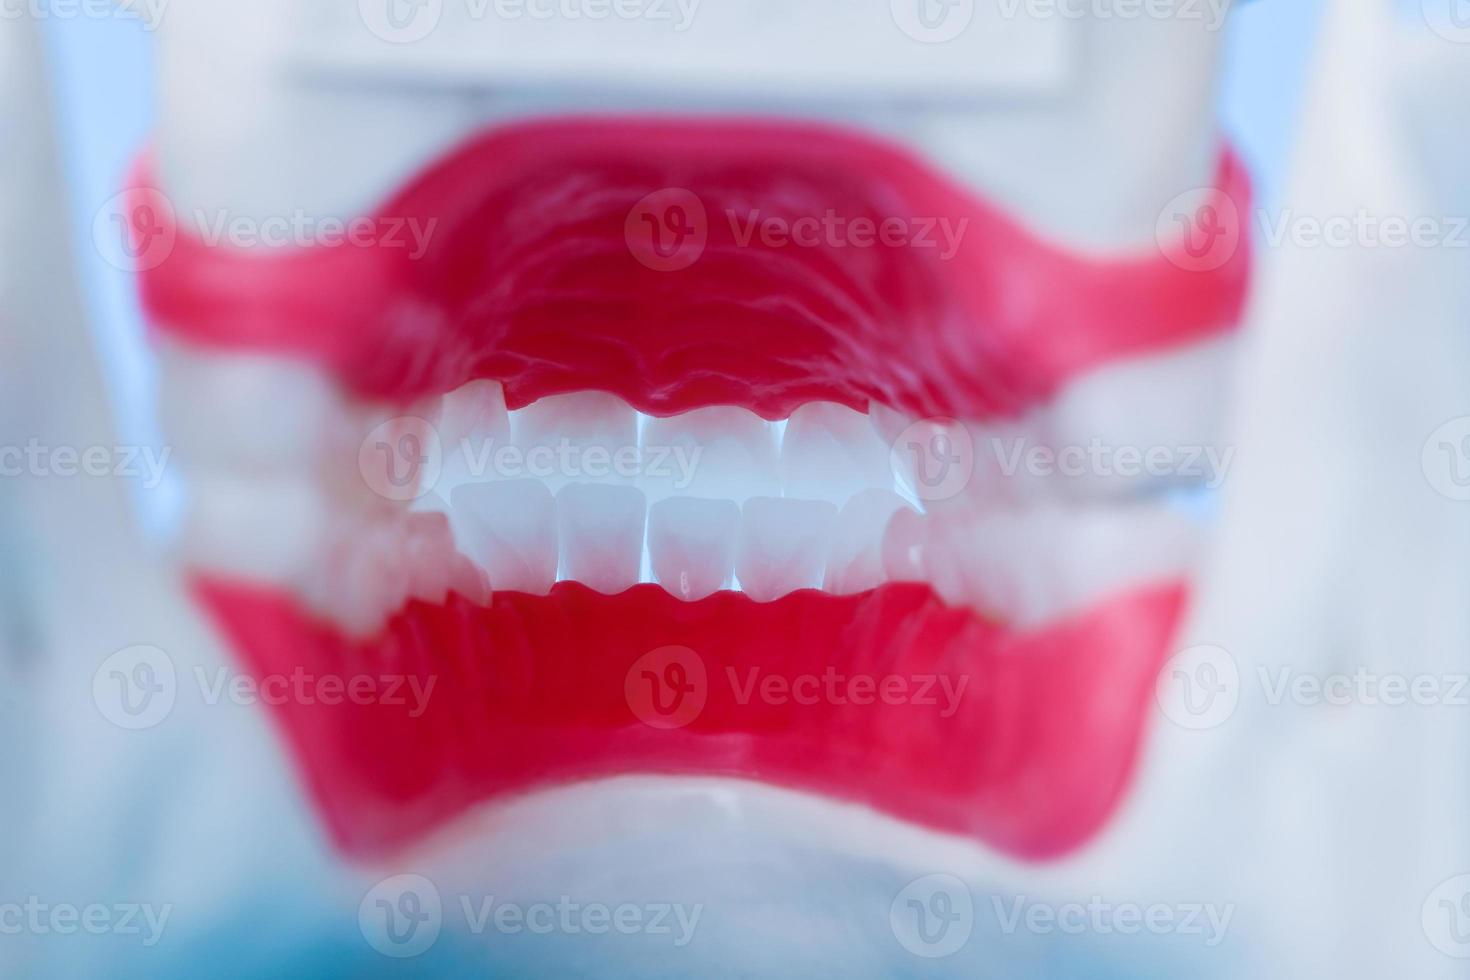 vue intérieure de la mâchoire humaine avec modèle d'anatomie des dents et des gencives photo